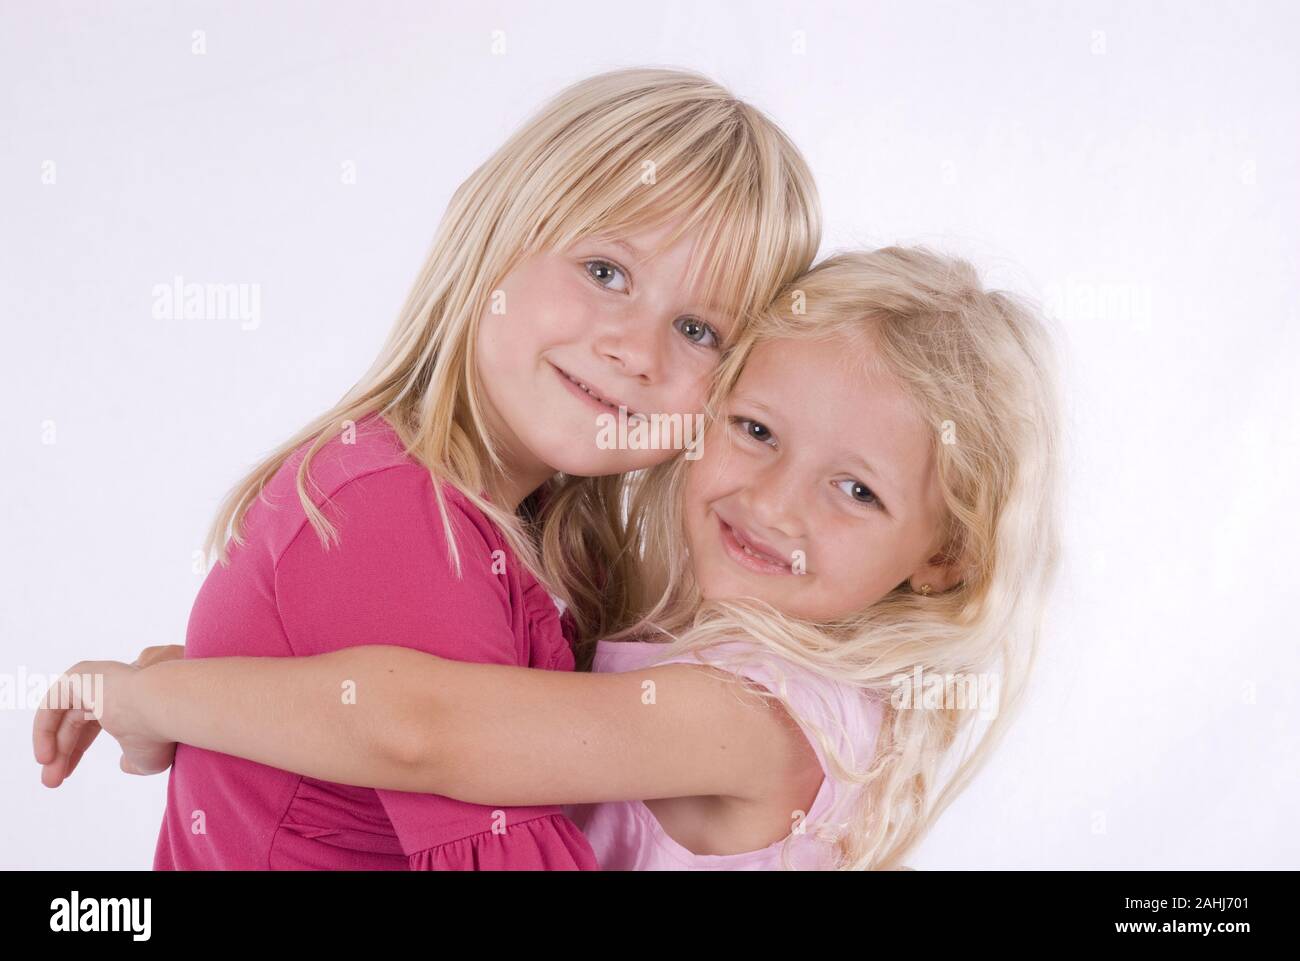 Zwei, Mädchen, Freunde, 6 und 7 Jahre alt, umarmen sich herzlich, MR:Yes Stock Photo